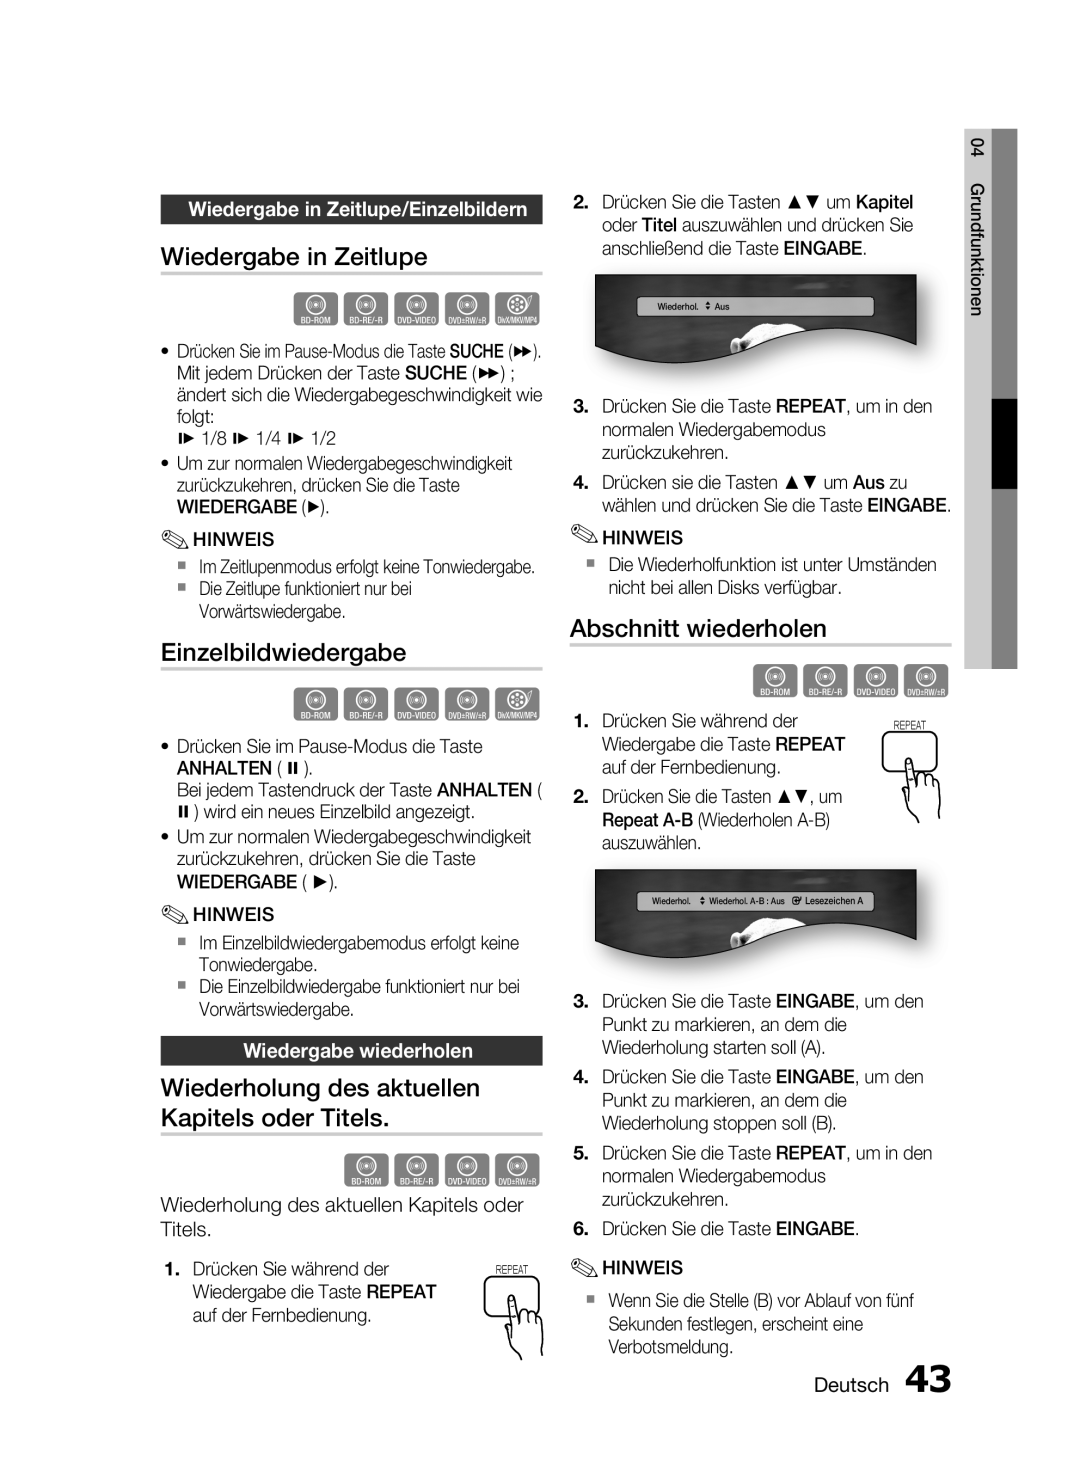 Samsung HT-C6200/EDC hzZy, Wiedergabe in Zeitlupe, Einzelbildwiedergabe, Wiederholung des aktuellen Kapitels oder Titels 